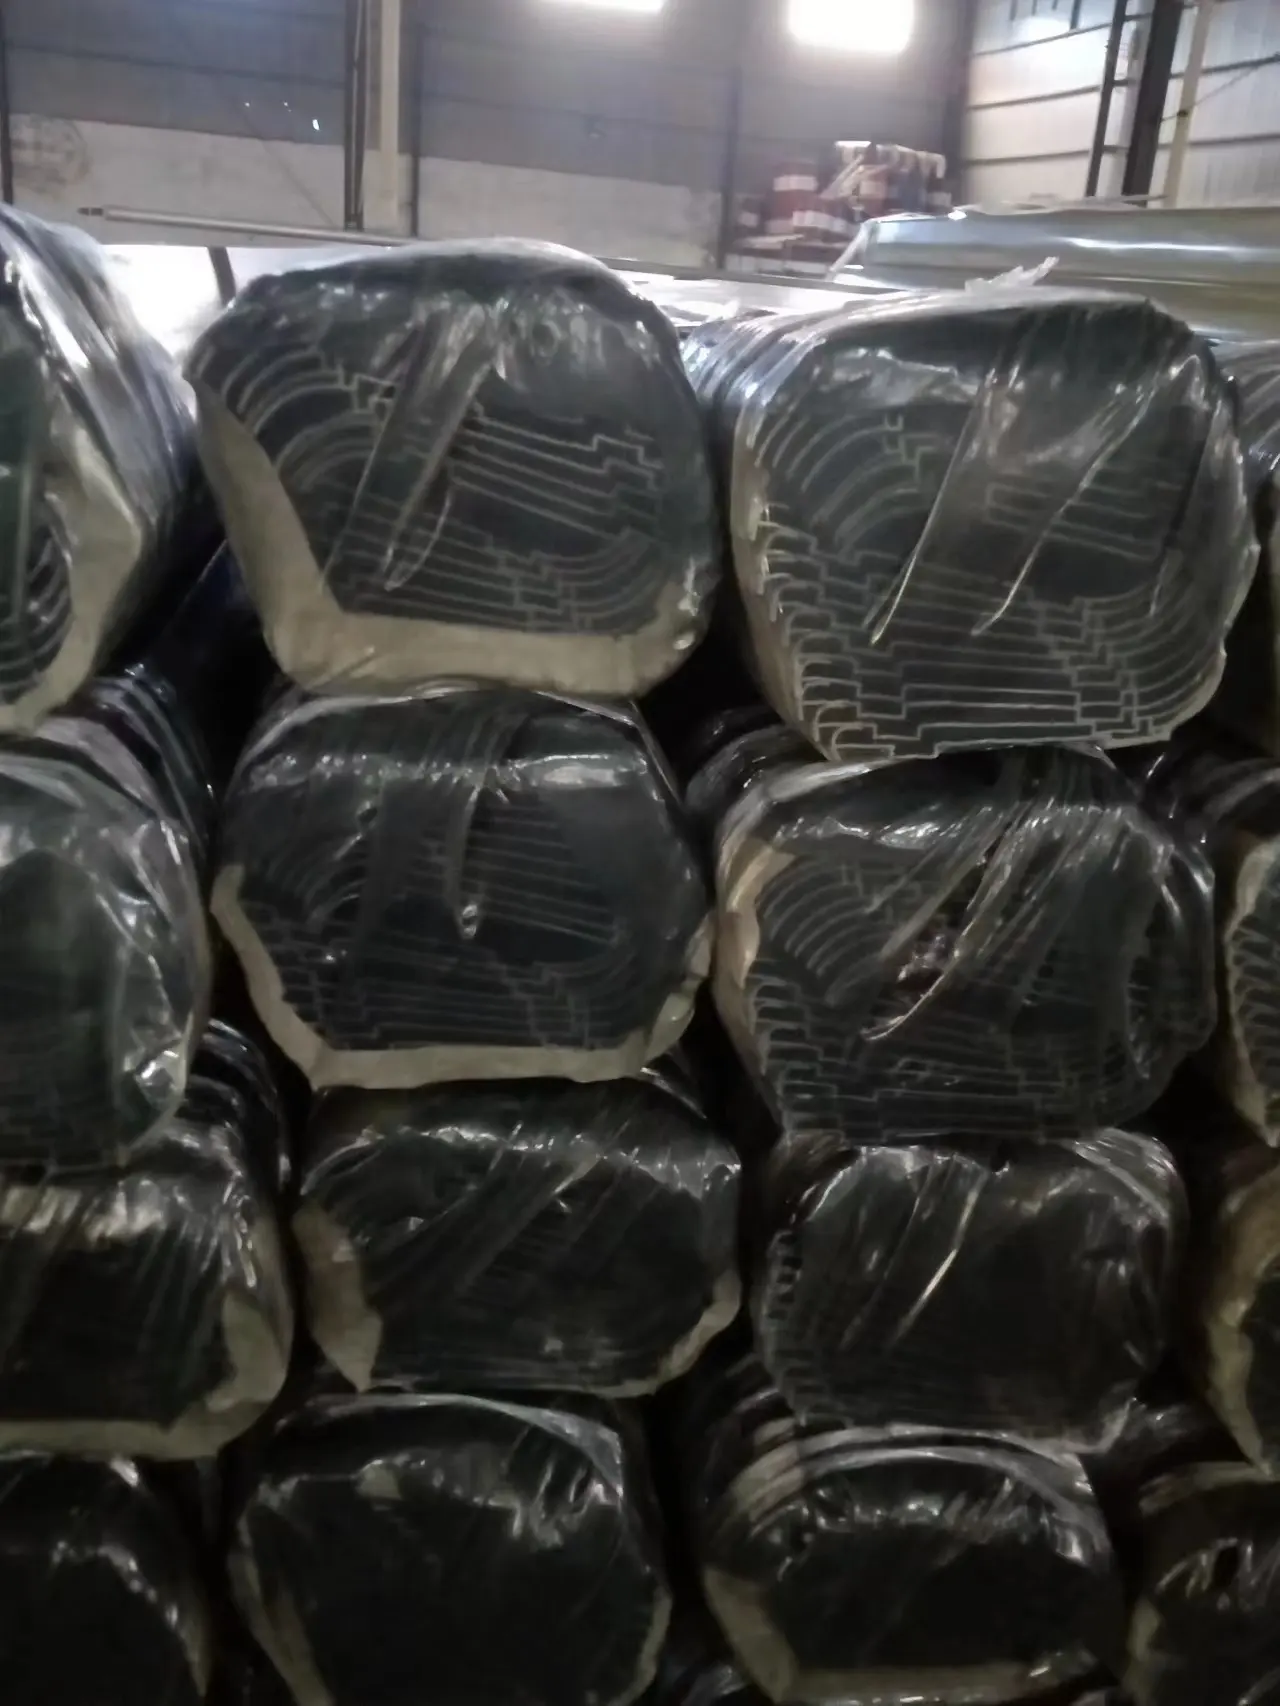 LM 중국 공급 업체 알루미늄 알루마이트 알루미늄 프레임 프로필 공장 가격 맞춤형 알루미늄 압출 프로파일